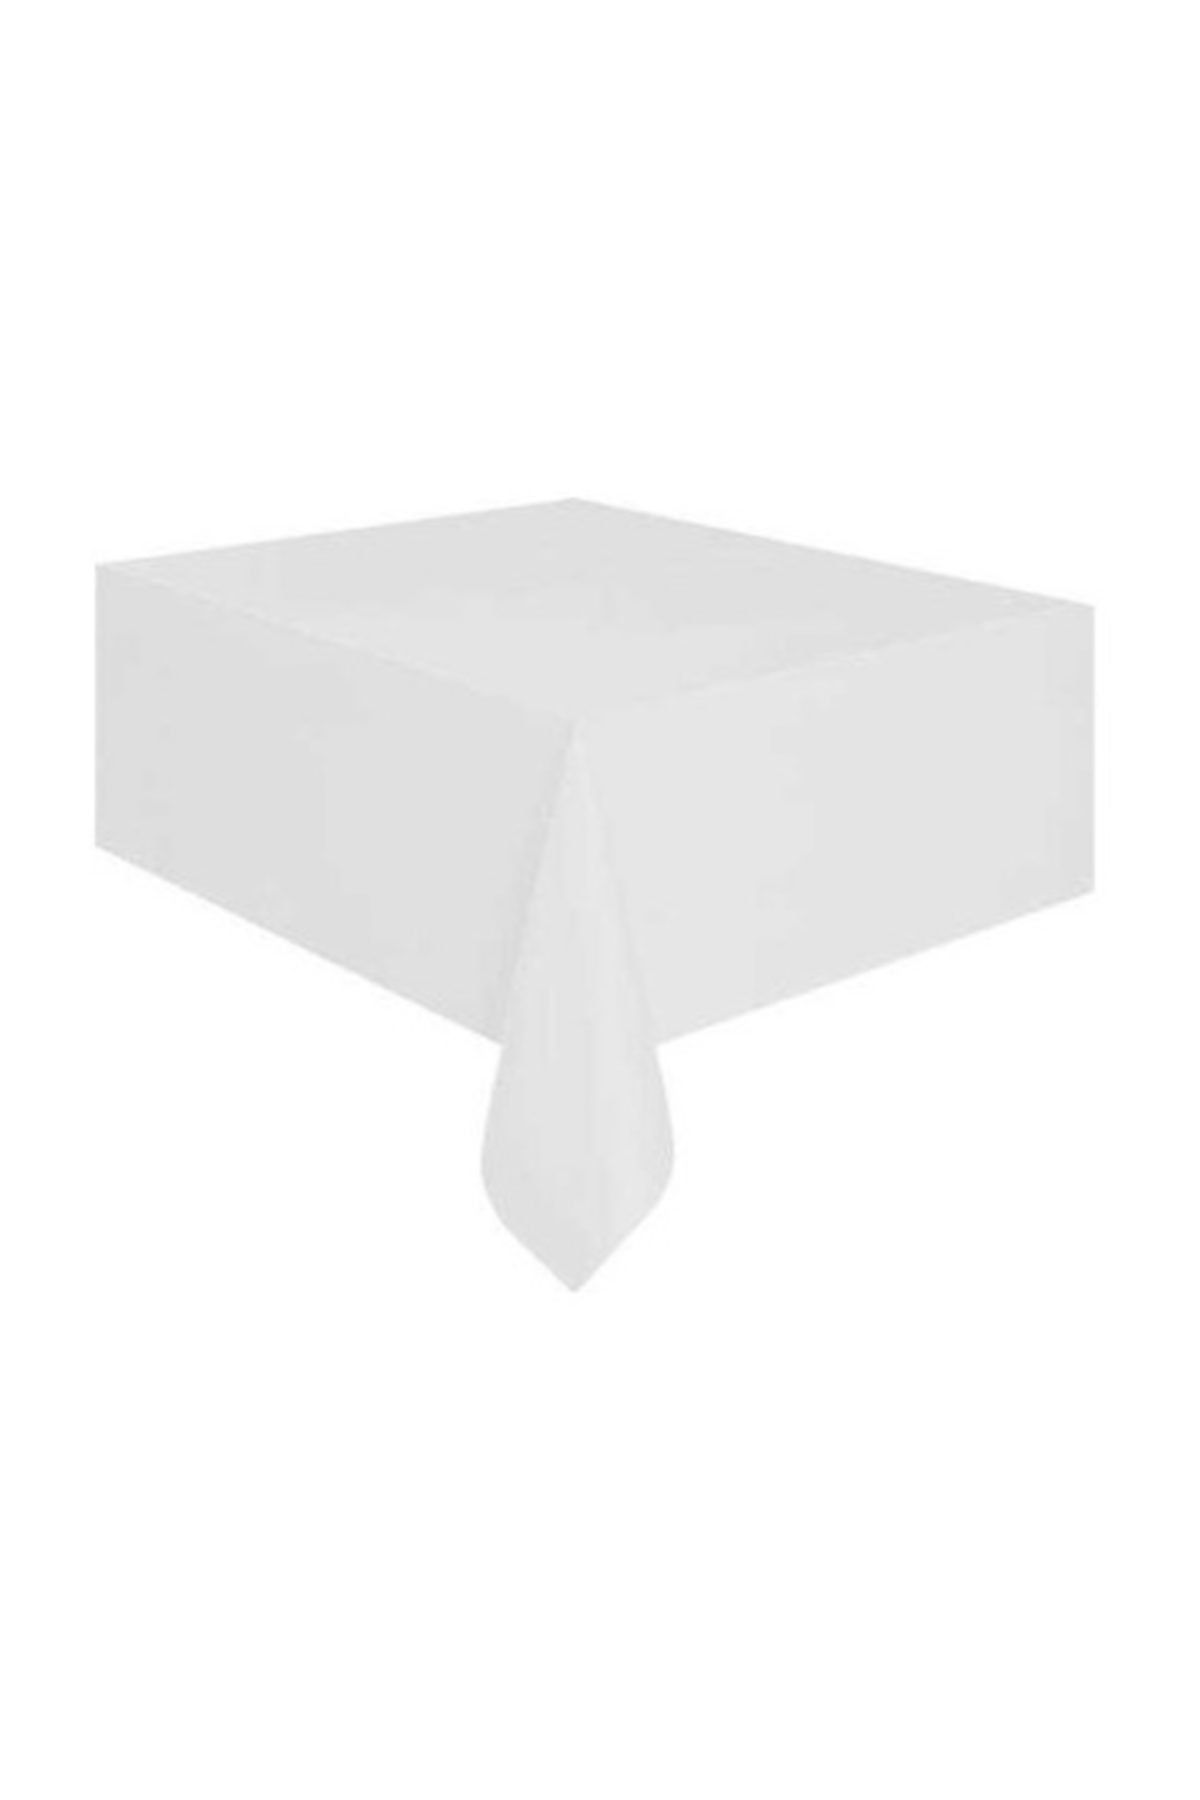 Cansüs Plastik Beyaz Masa Örtüsü 120x180 cm